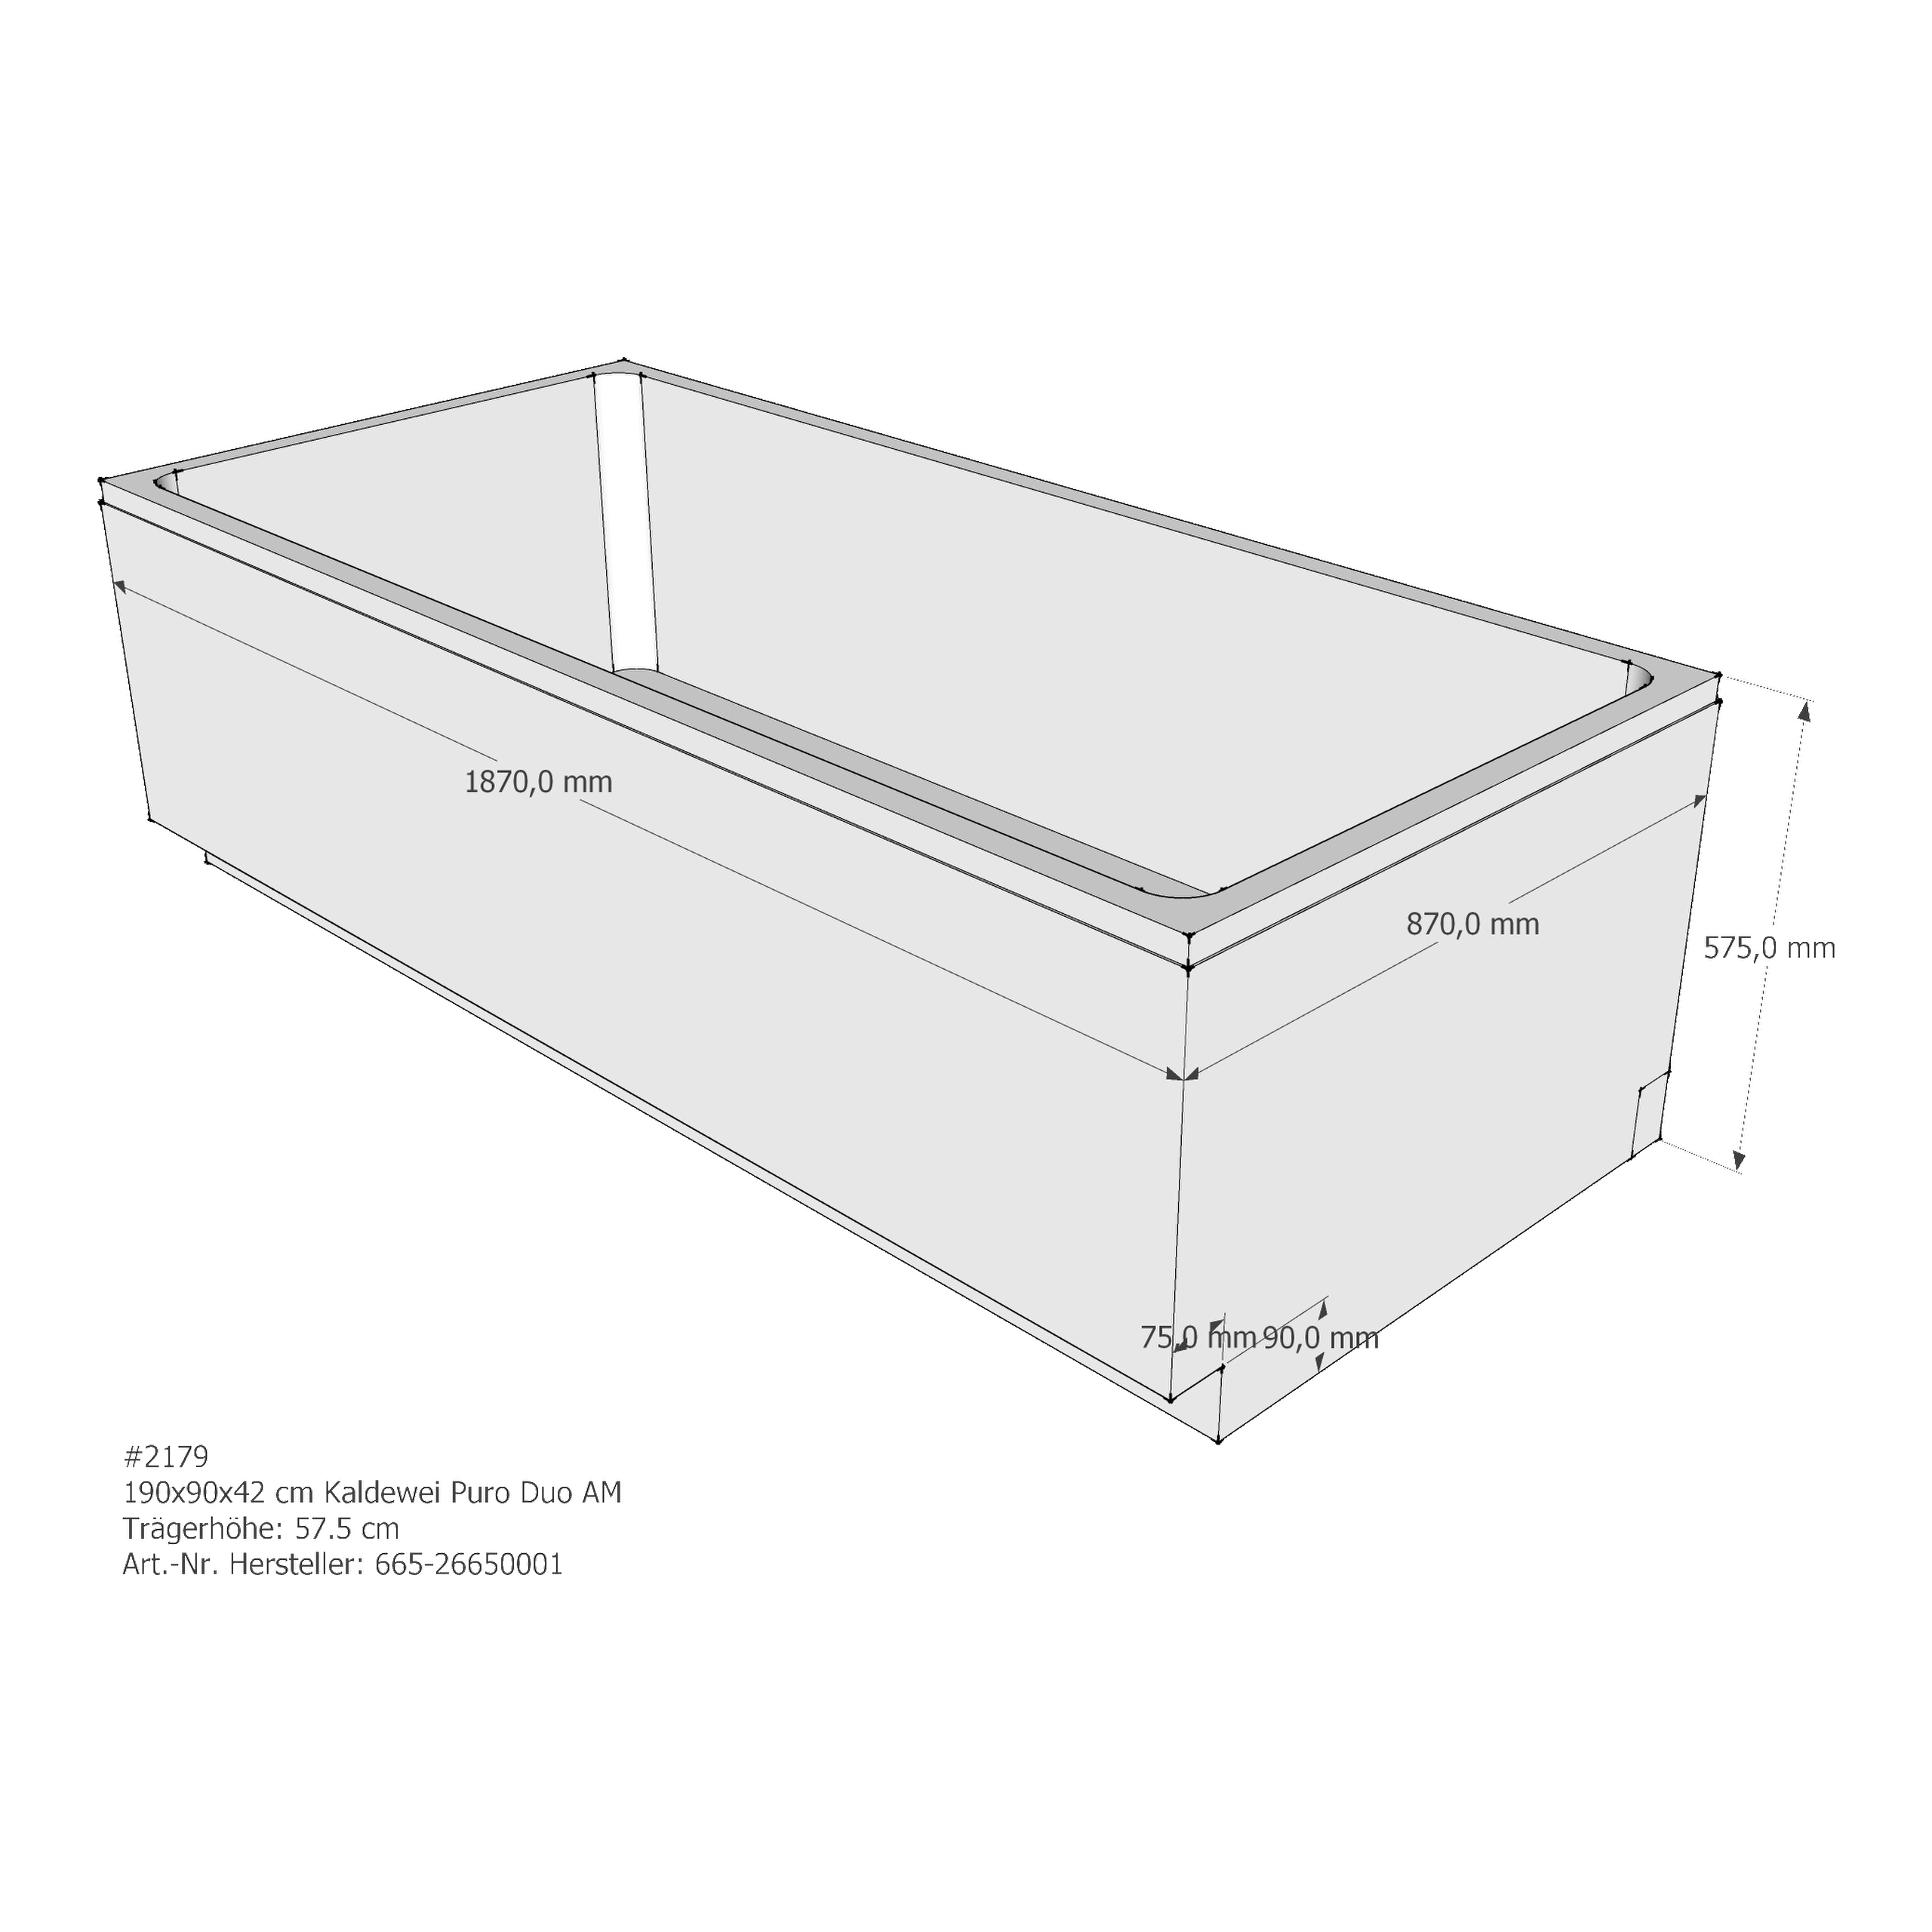 Badewannenträger für Kaldewei Puro Duo 190 × 90 × 42 cm